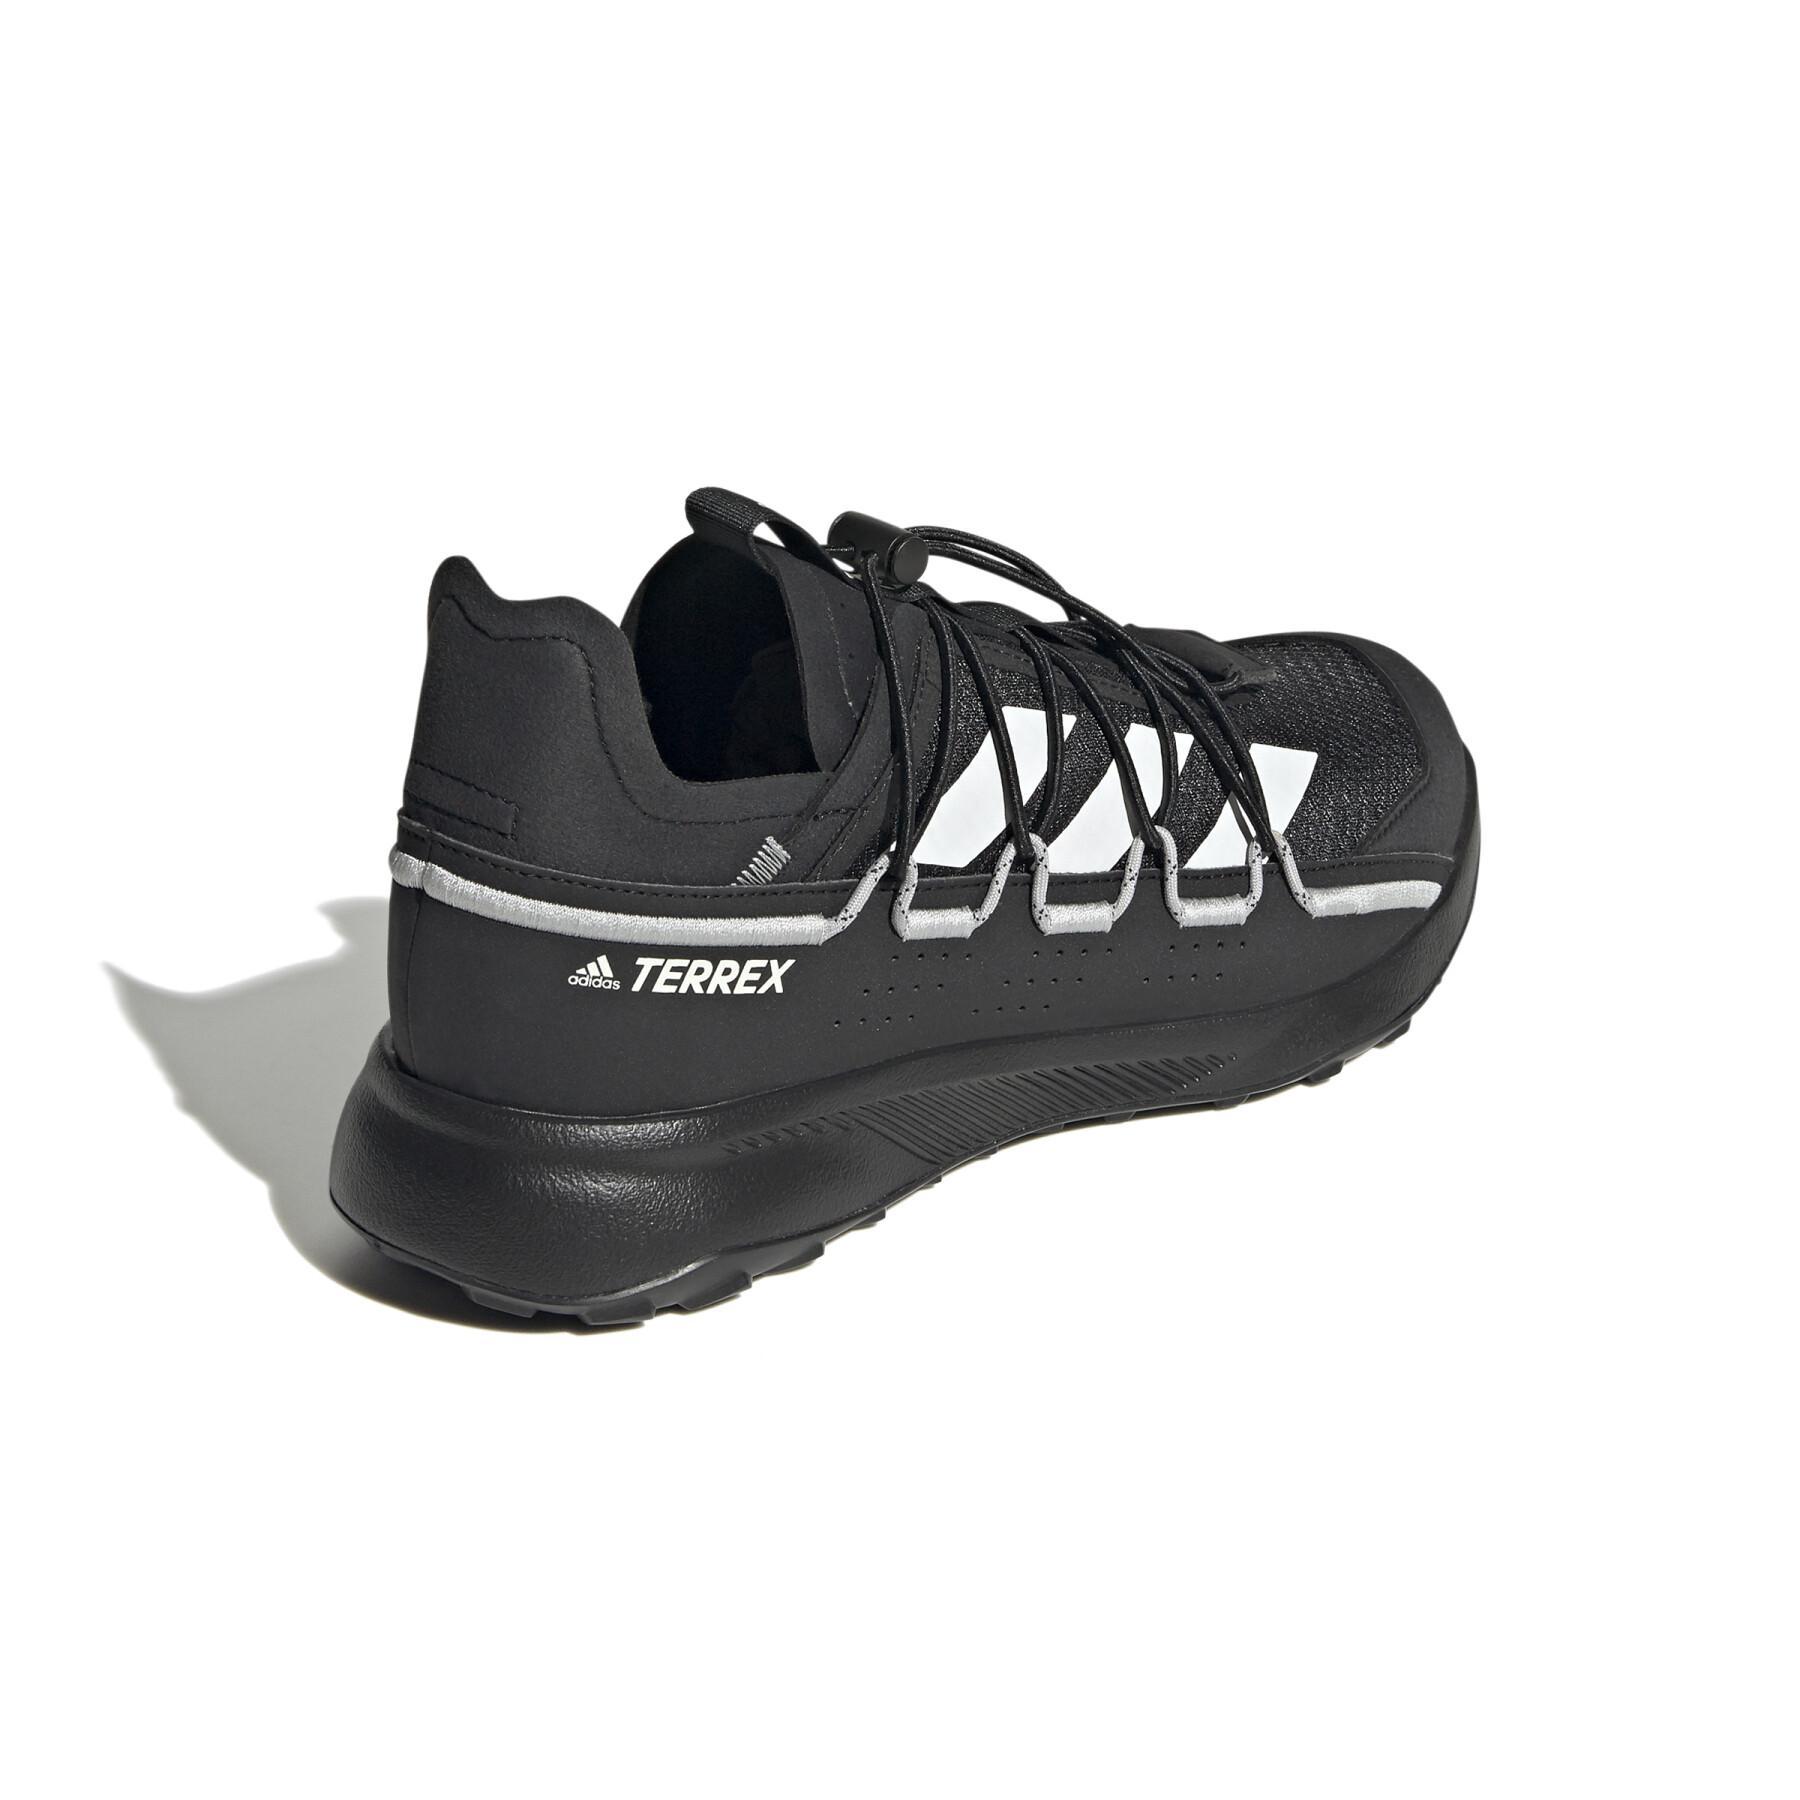 Zapatillas de senderismo adidas Terrex Voyager 21